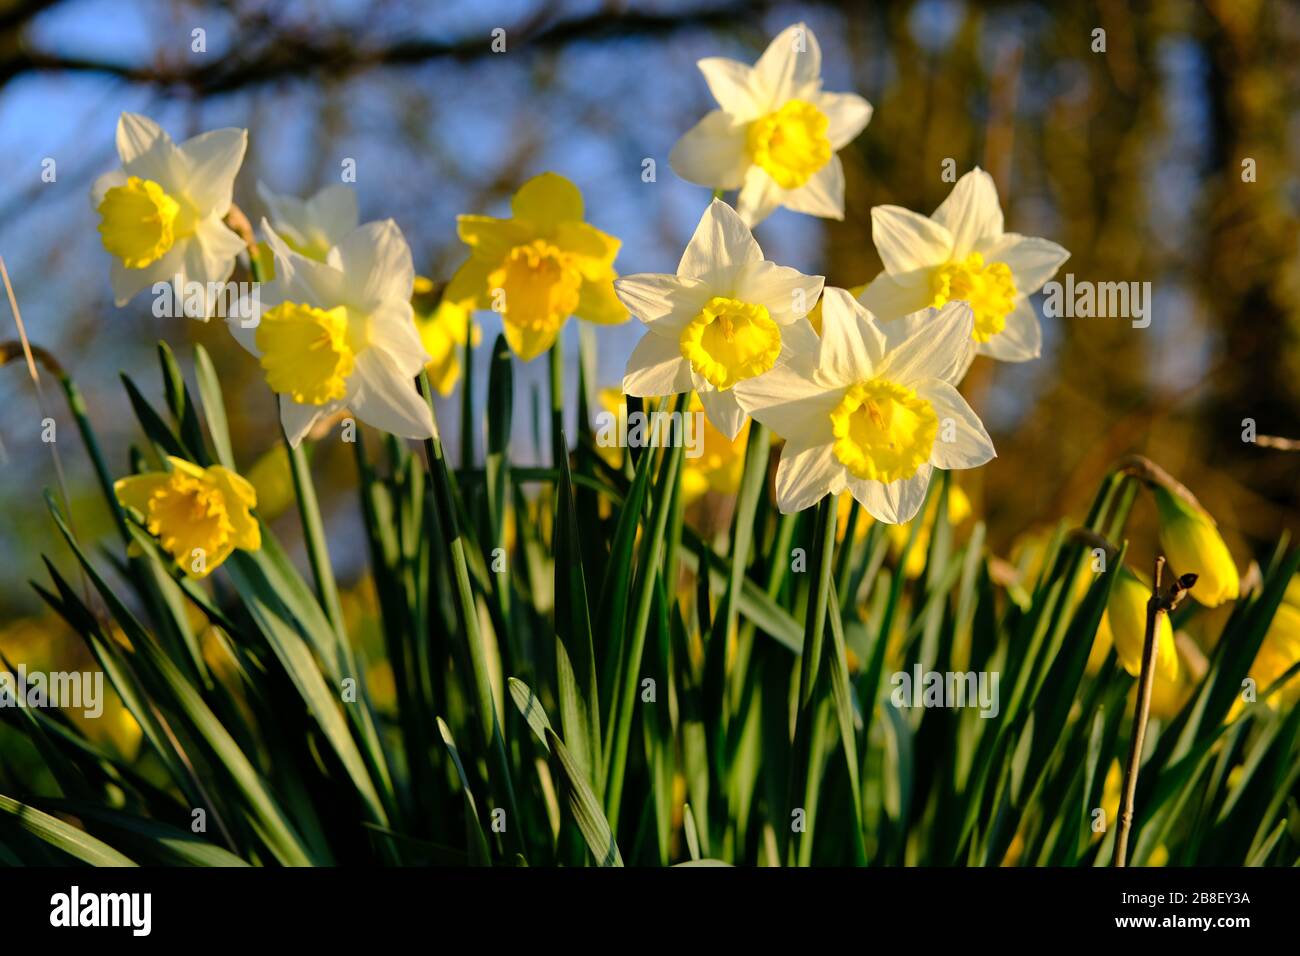 La fleur de jonquille traditionnelle aux pétales jaunes et blancs. Les  jonquilles (Narcissus) sont les plus belles fleurs printanières. Prise à  Staffordshire, Royaume-Uni Photo Stock - Alamy